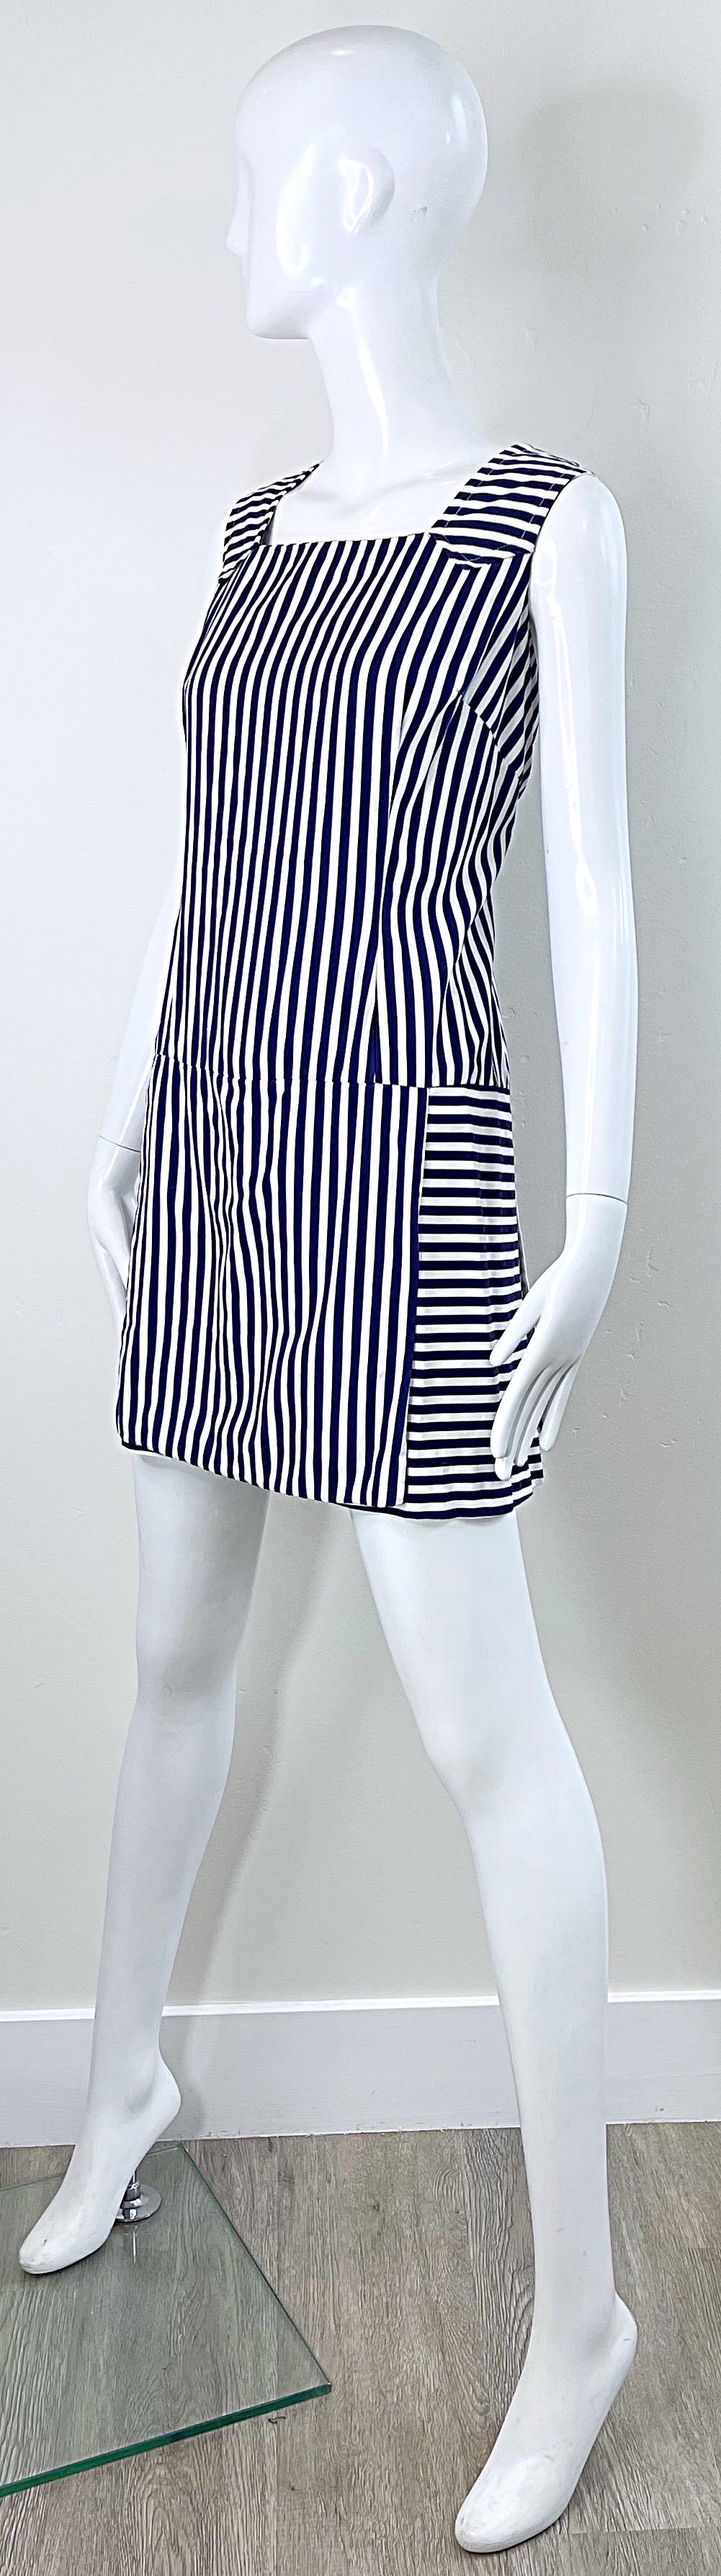 1960s Romper Large Size Navy + White Striped Cotton Vintage 60s Skort Dress For Sale 5